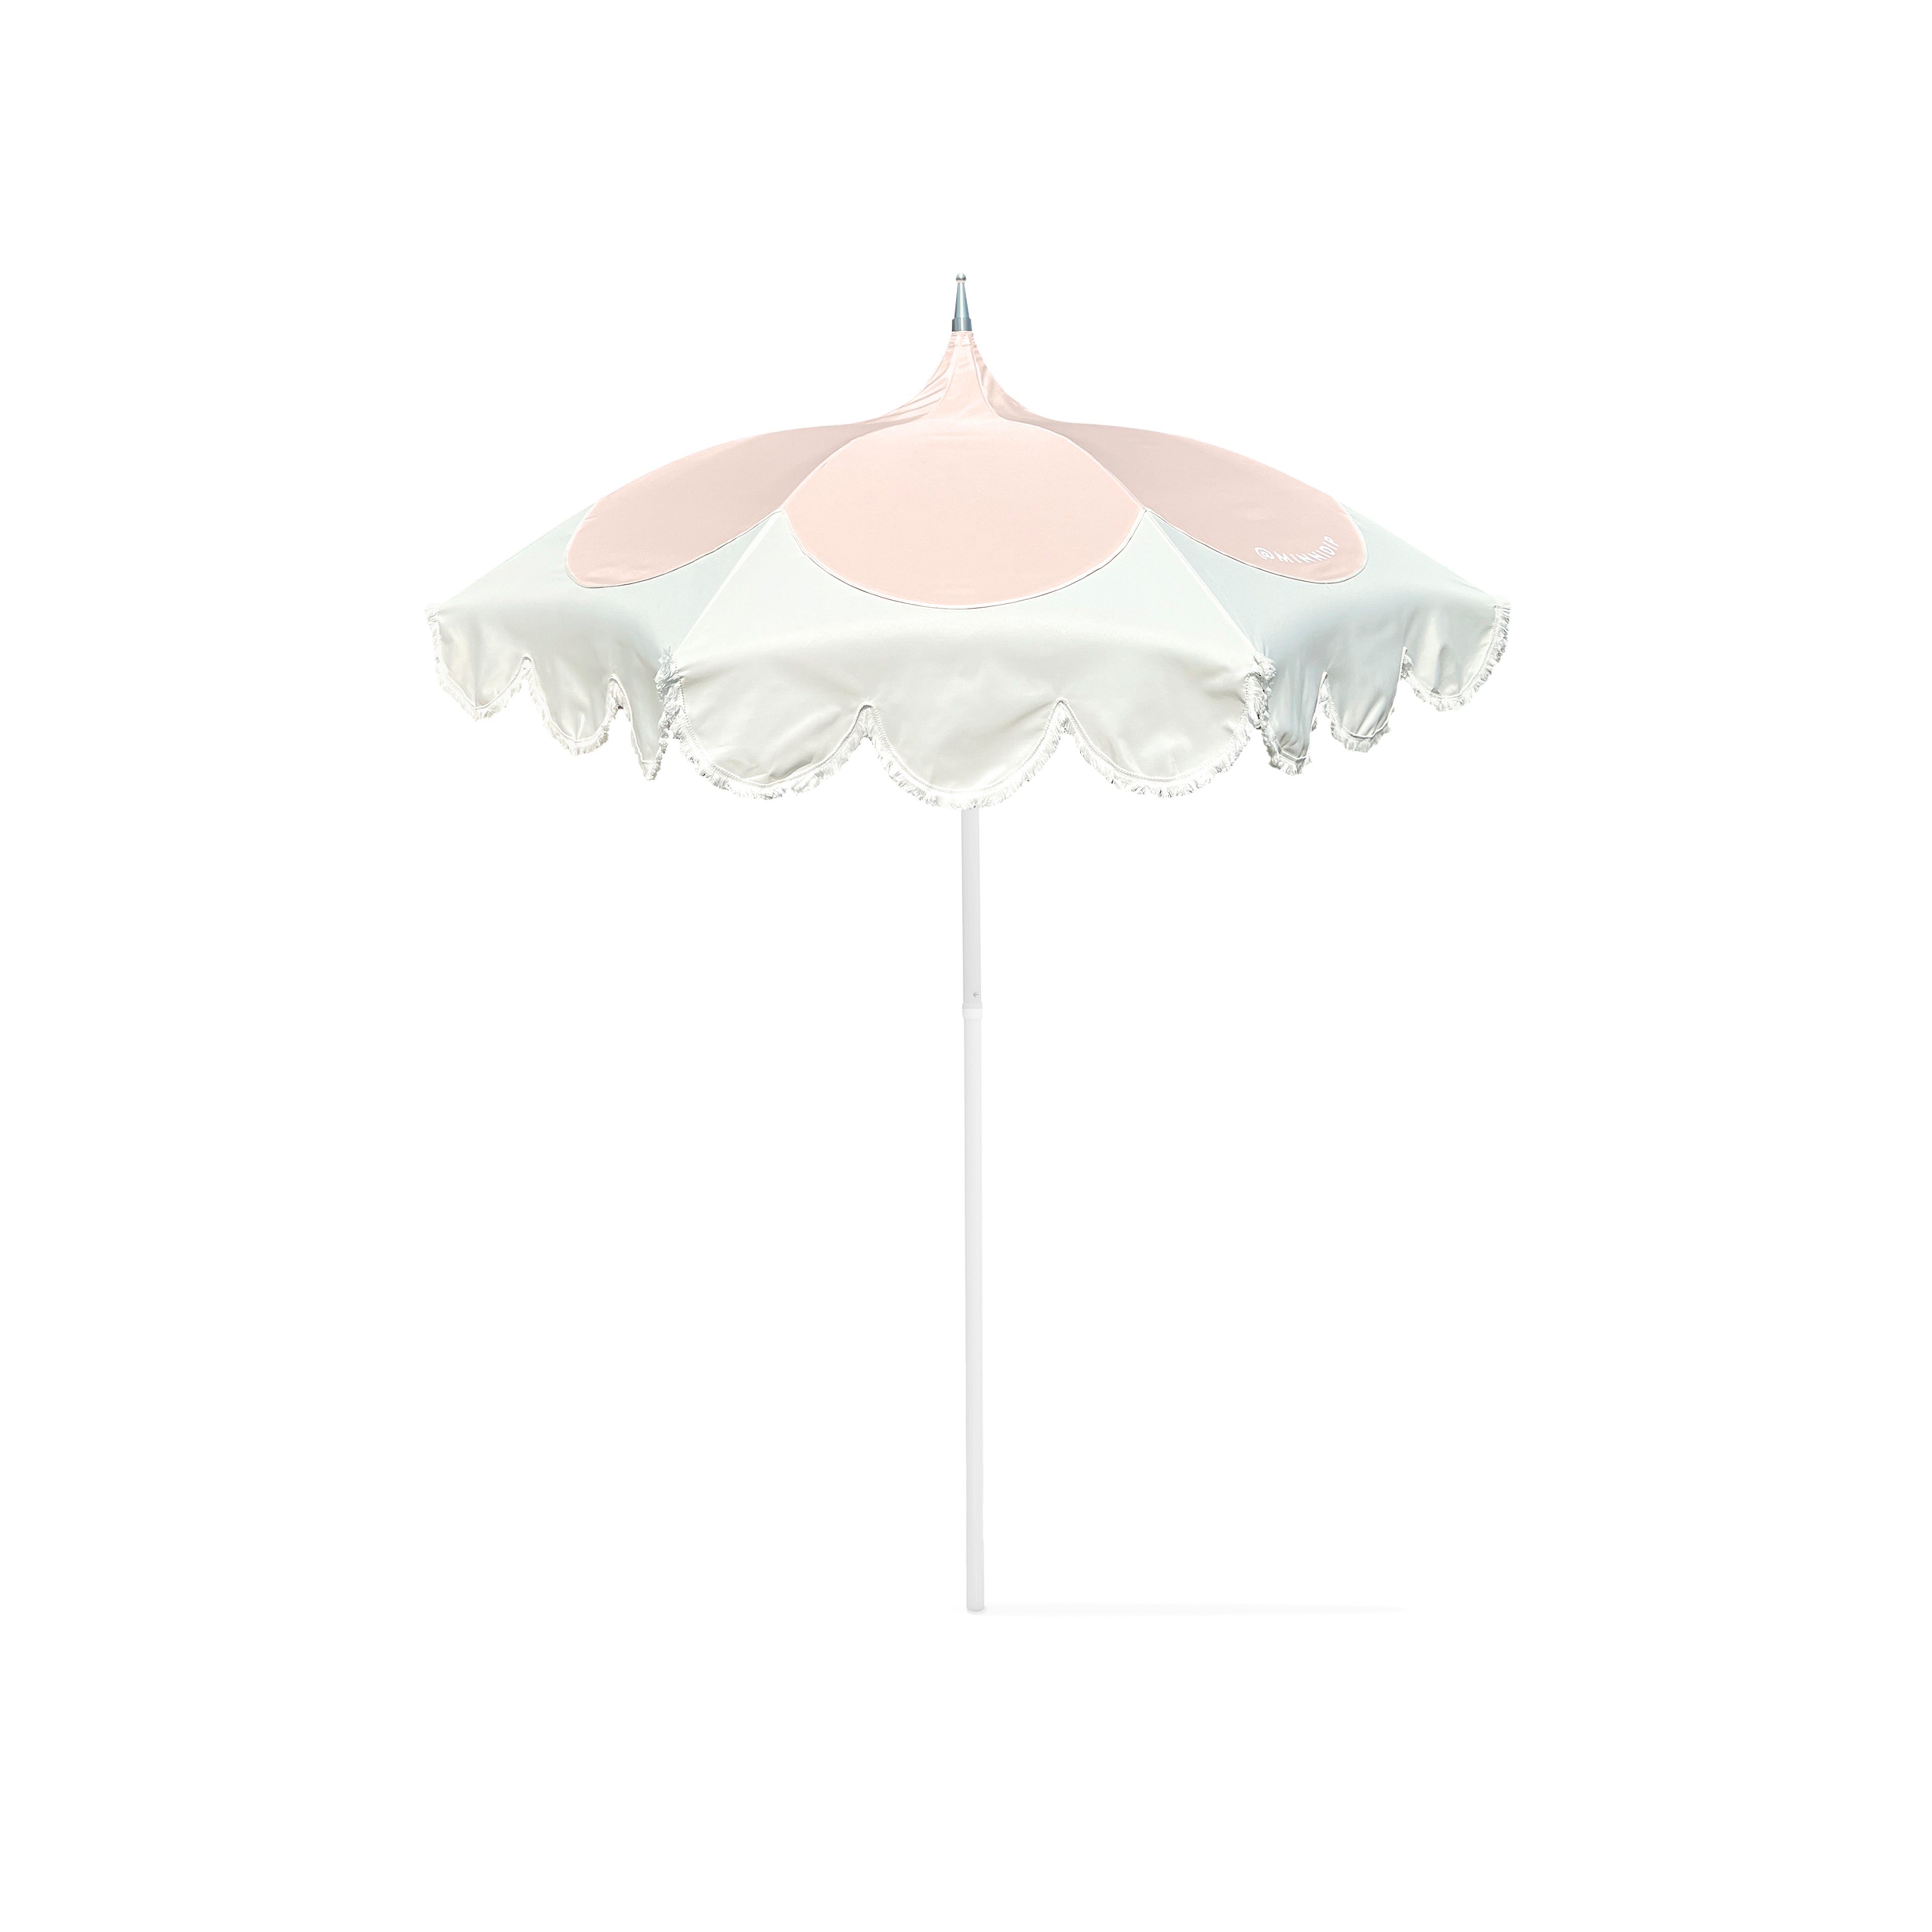 the SCALLOPED PETAL Market Umbrella in Blush